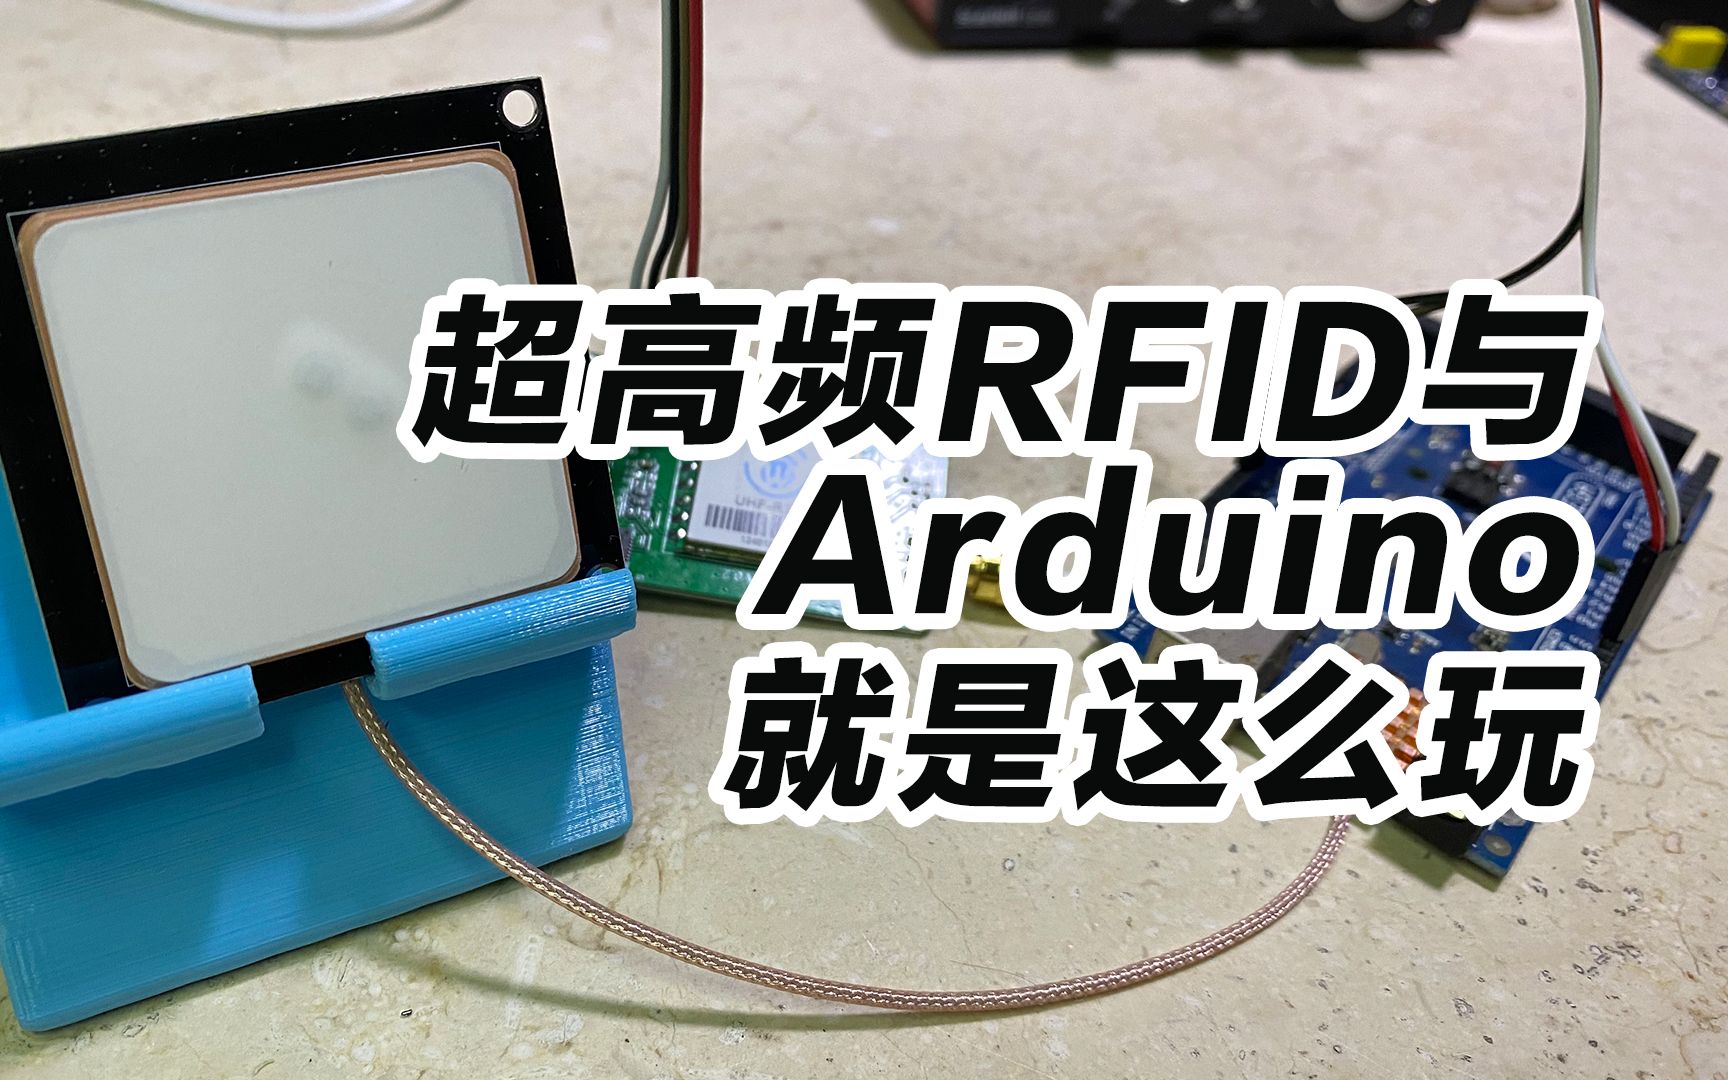 超高頻rfid與arduino就是這么玩